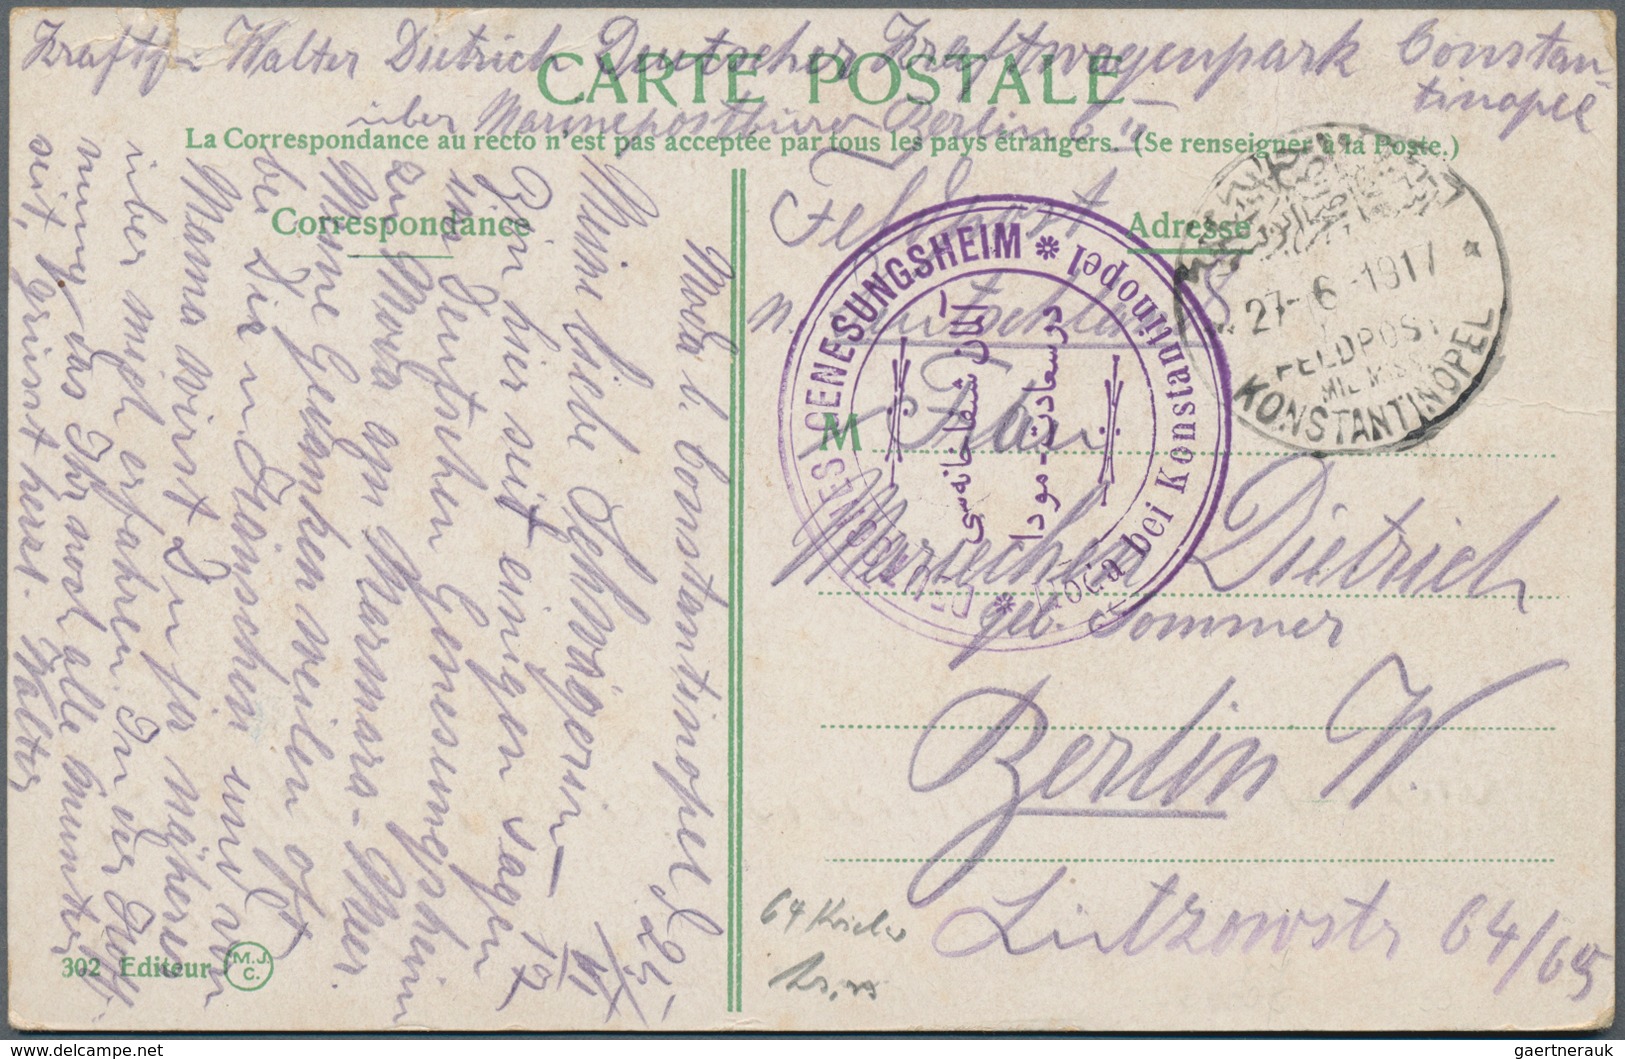 Militärmission: 1916/1918, rd. 45 Briefe und Karten mit teils verschiedenen Feldpost- und Nebenstemp